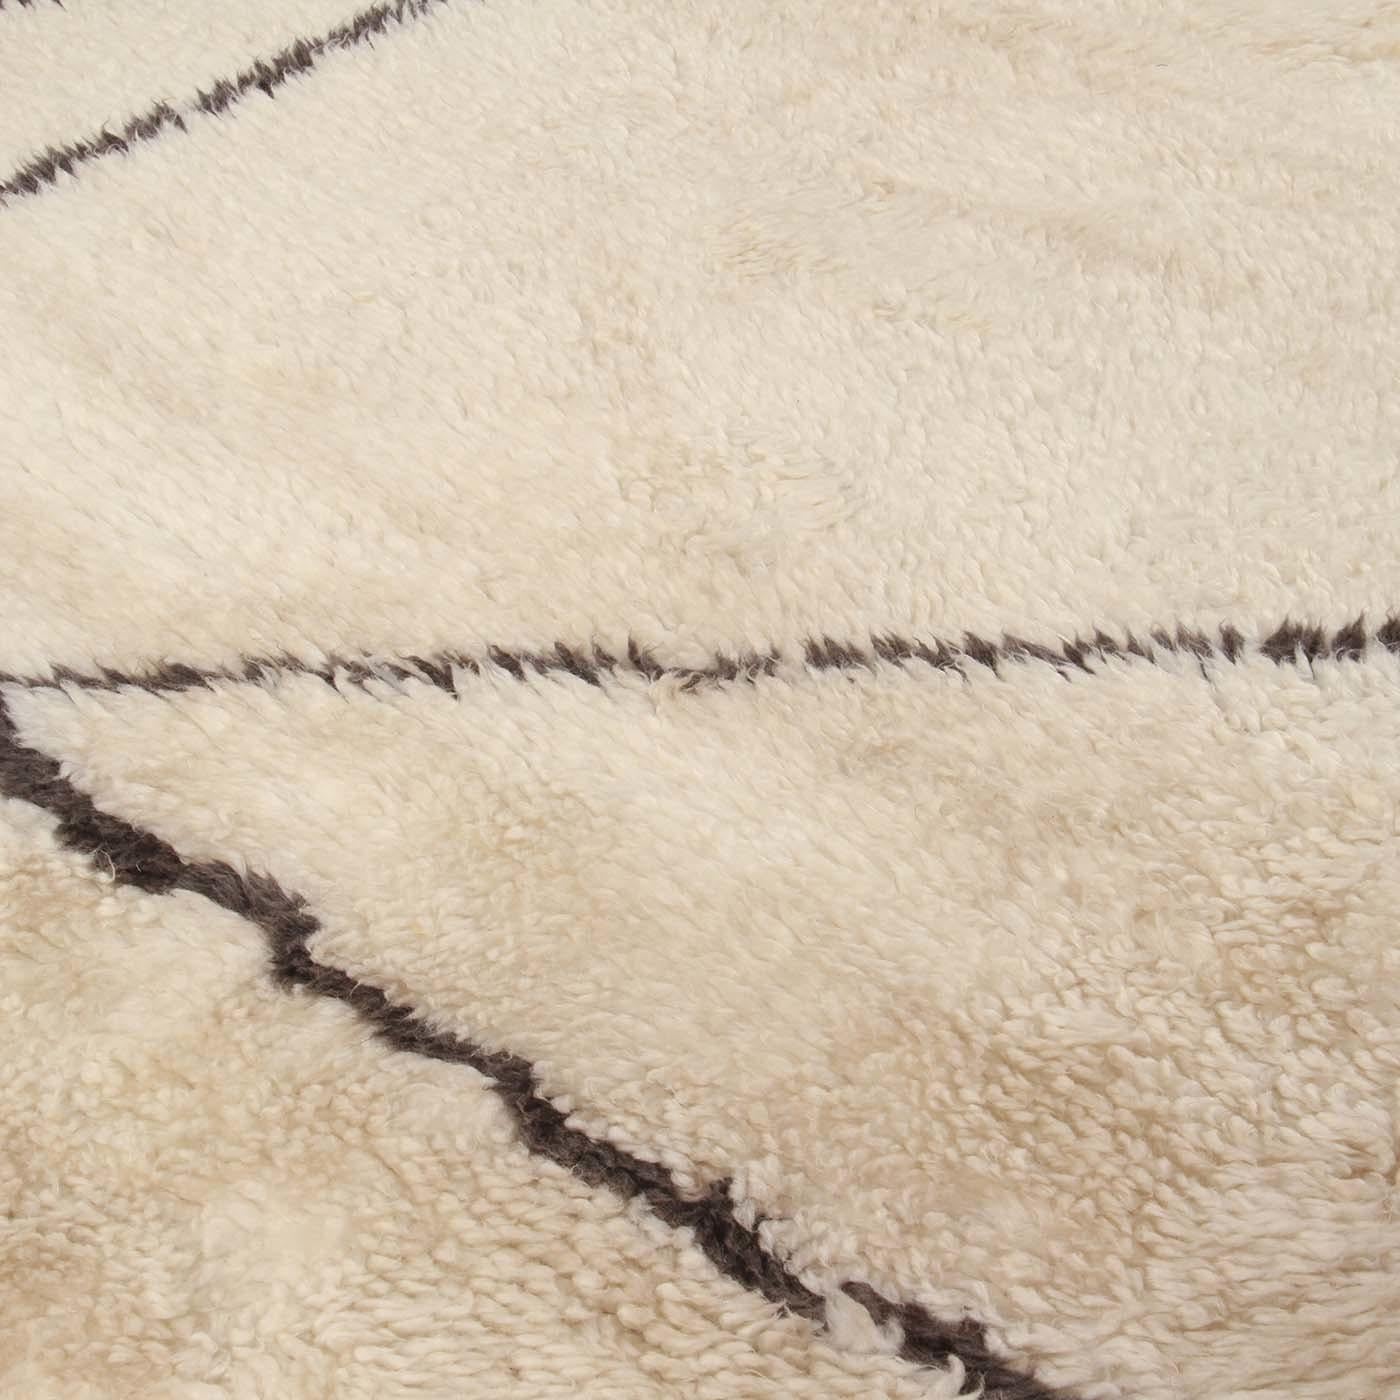 Dieser Teppich aus der Moroccan Touch-Kollektion zeichnet sich durch eine unglaubliche Detailgenauigkeit aus, die durch die komplizierte Webart aus Wolle und Mohair erreicht wird. Die unglaubliche Handwerkskunst wird durch die Verwendung von